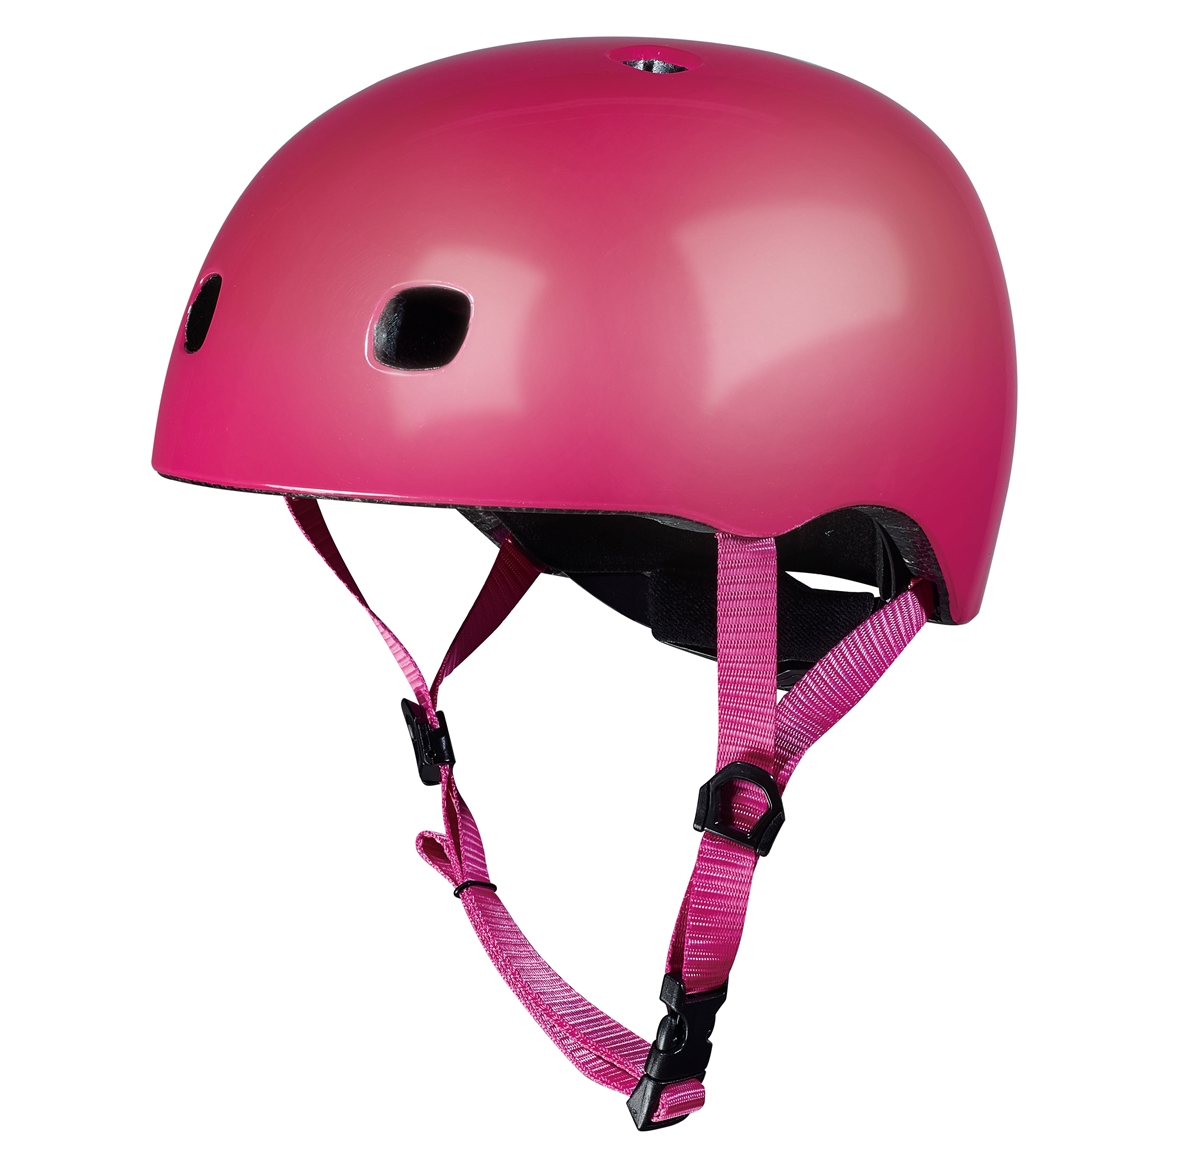 Micro - Helmet - Pink (S) (AC2080BX)